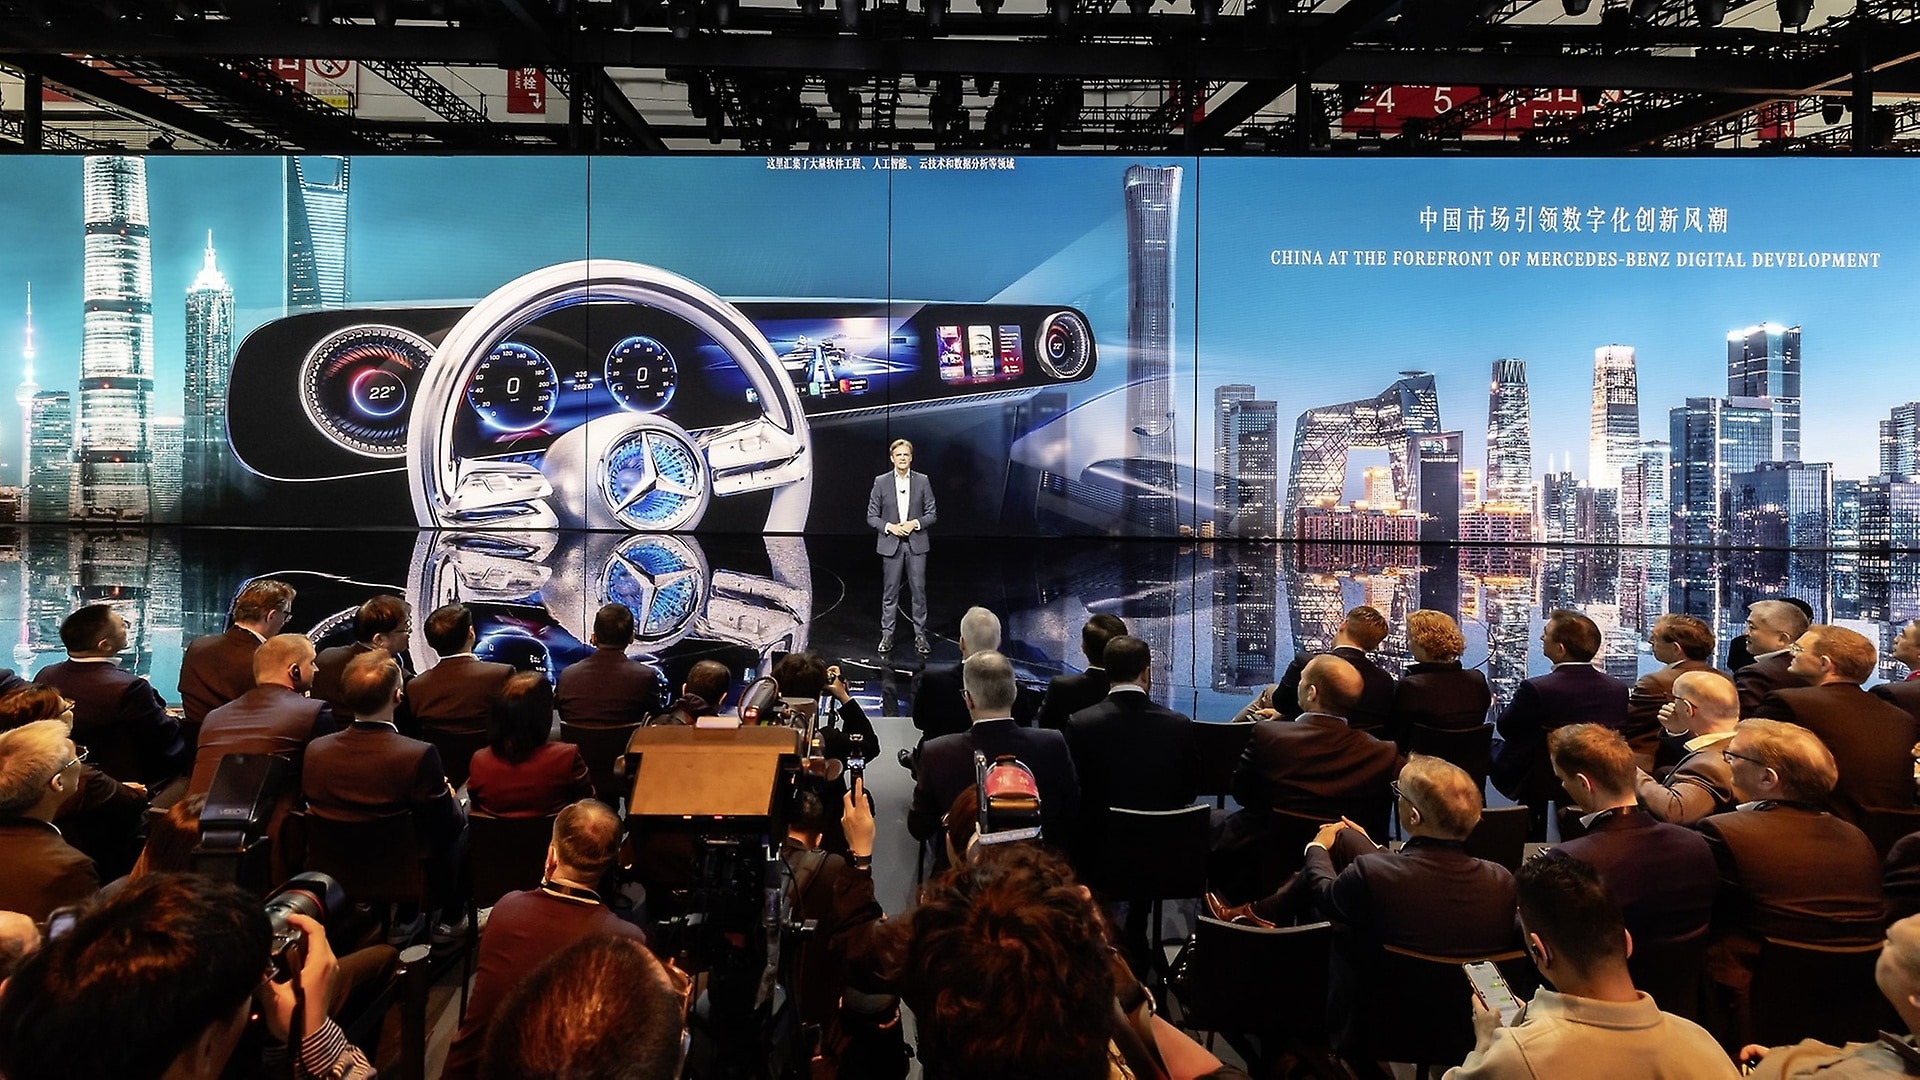 Markus Schäfer: "Unsere Entwicklungsteams in China leisten auf dem größten Automarkt der Welt einen wichtigen Beitrag zum rasanten Fortschritt in den Bereichen künstliche Intelligenz, autonomes Fahren und Spitzensoftware."